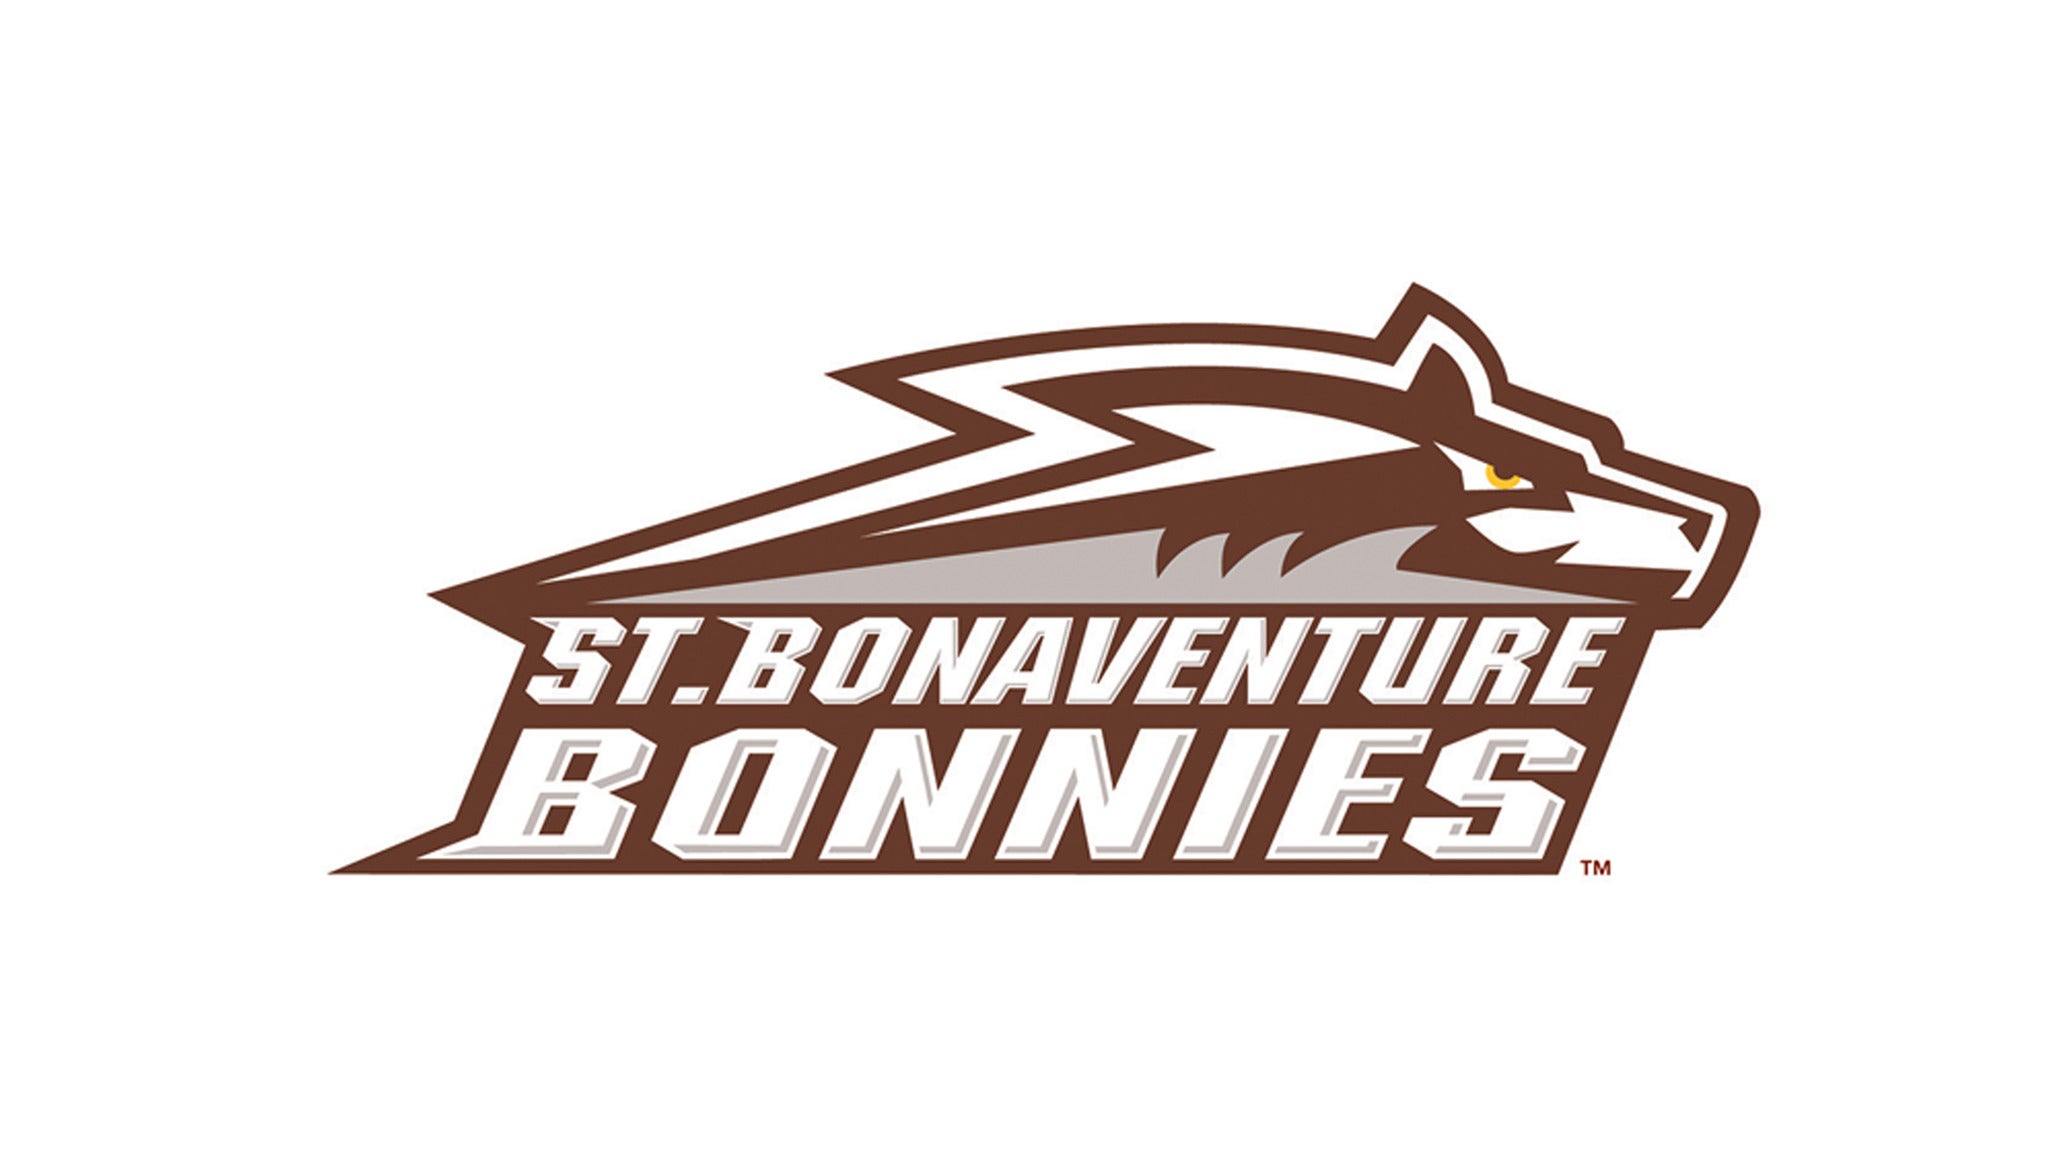 St. Bonaventure Bonnies Mens Basketball vs. Vermont Men's Basketball in Rochester promo photo for Season presale offer code